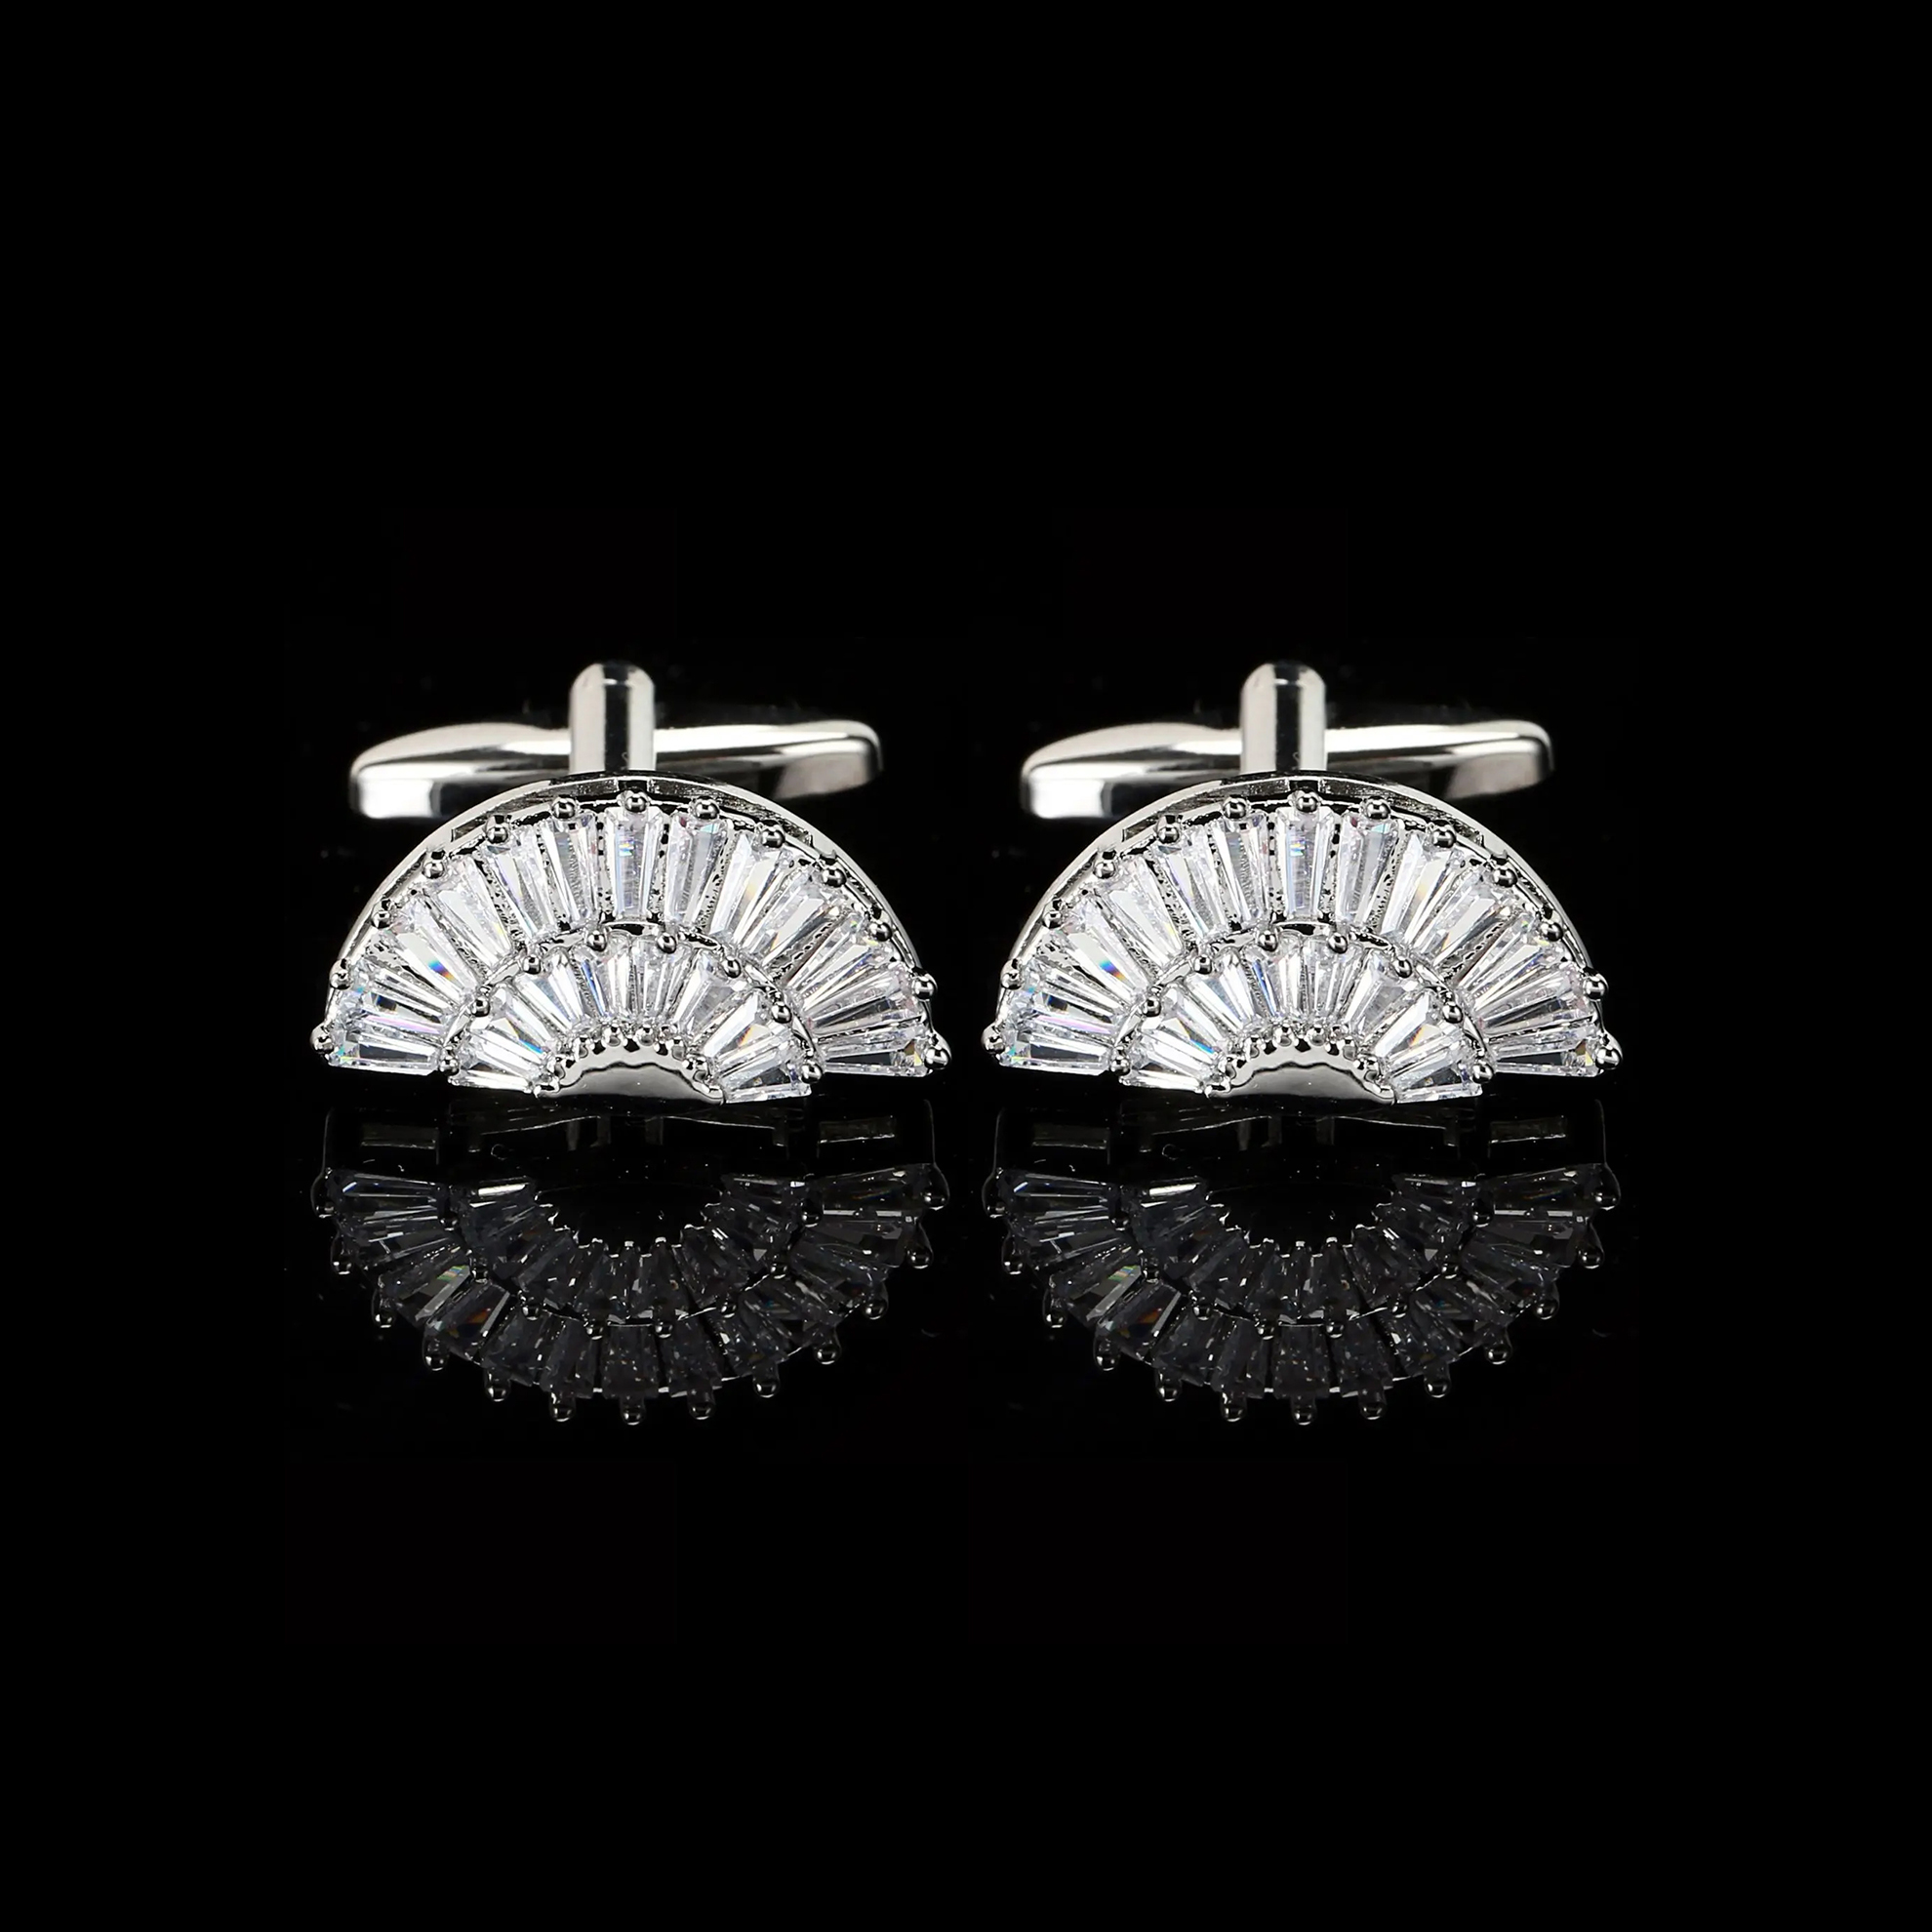 Cufflers Designer White Fan Sector Crystal Cufflinks Elegant Zircon Design Free Gift Box – CU-3014-B